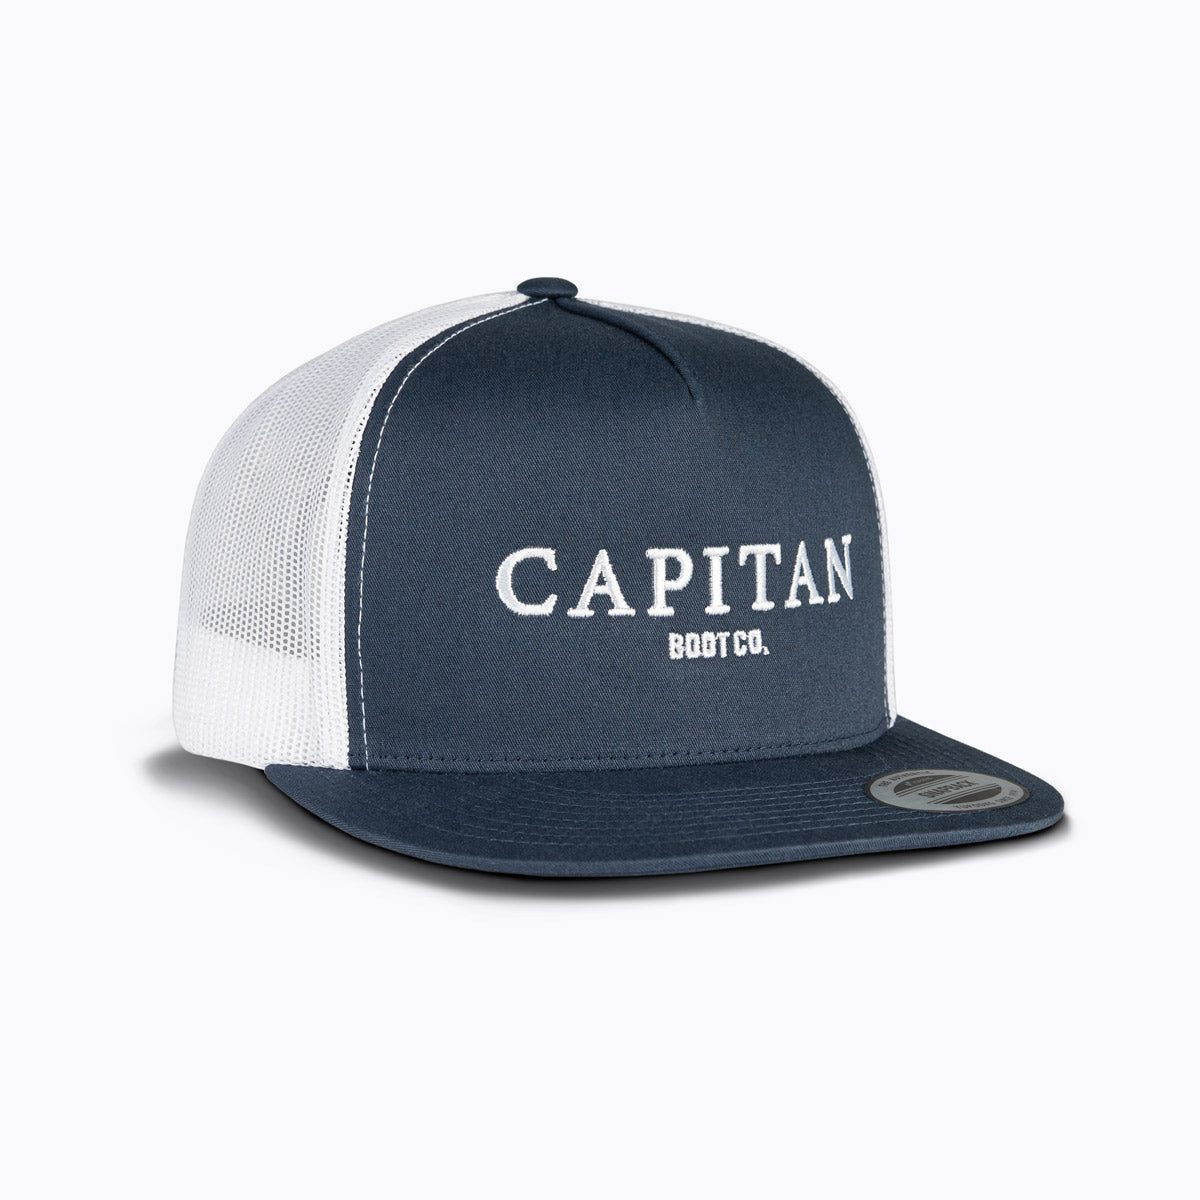 Boot Co Cap Navy Cap - Capitan Boots